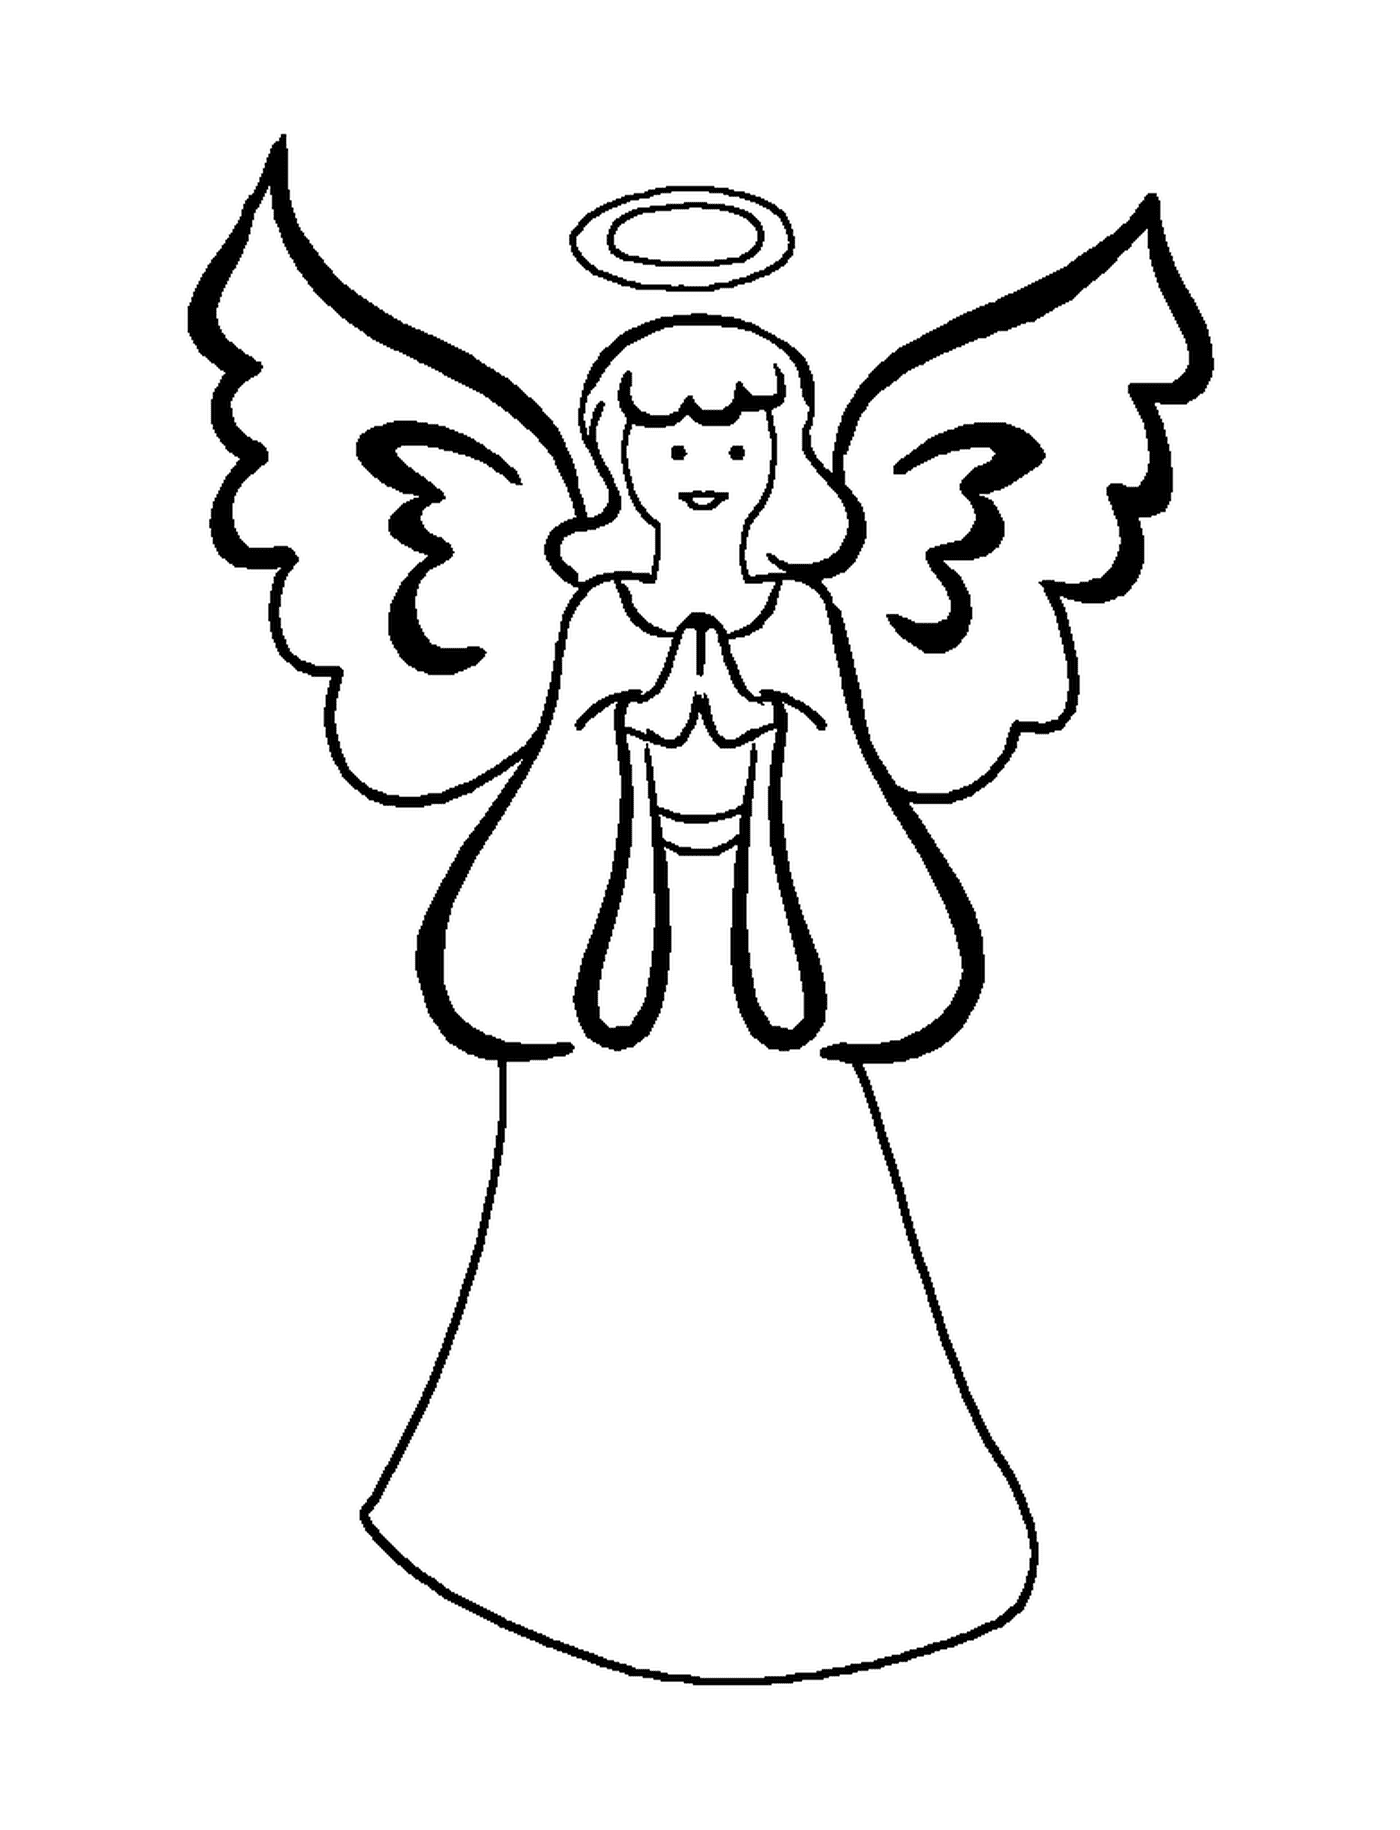  Un angelo con le ali stese 